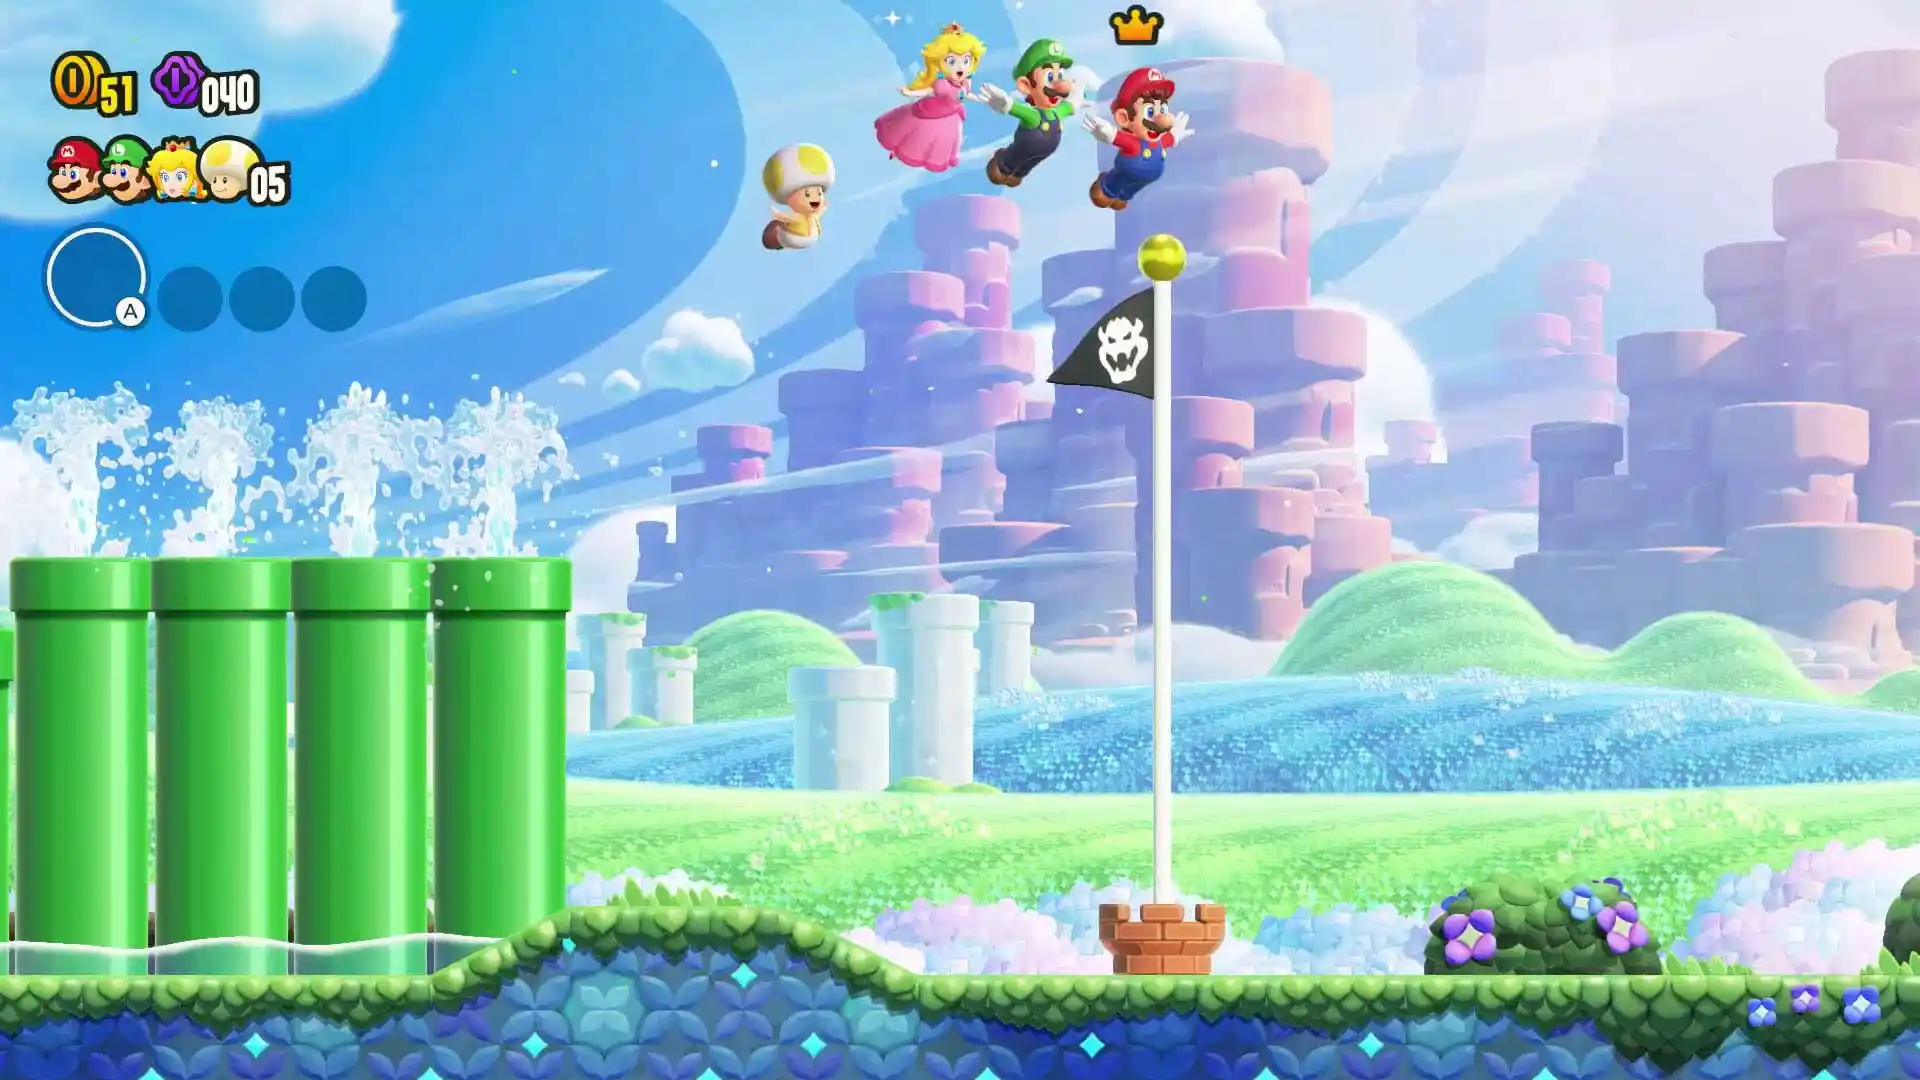 بازی Super Mario Bros Wonder برای Nintendo Switch